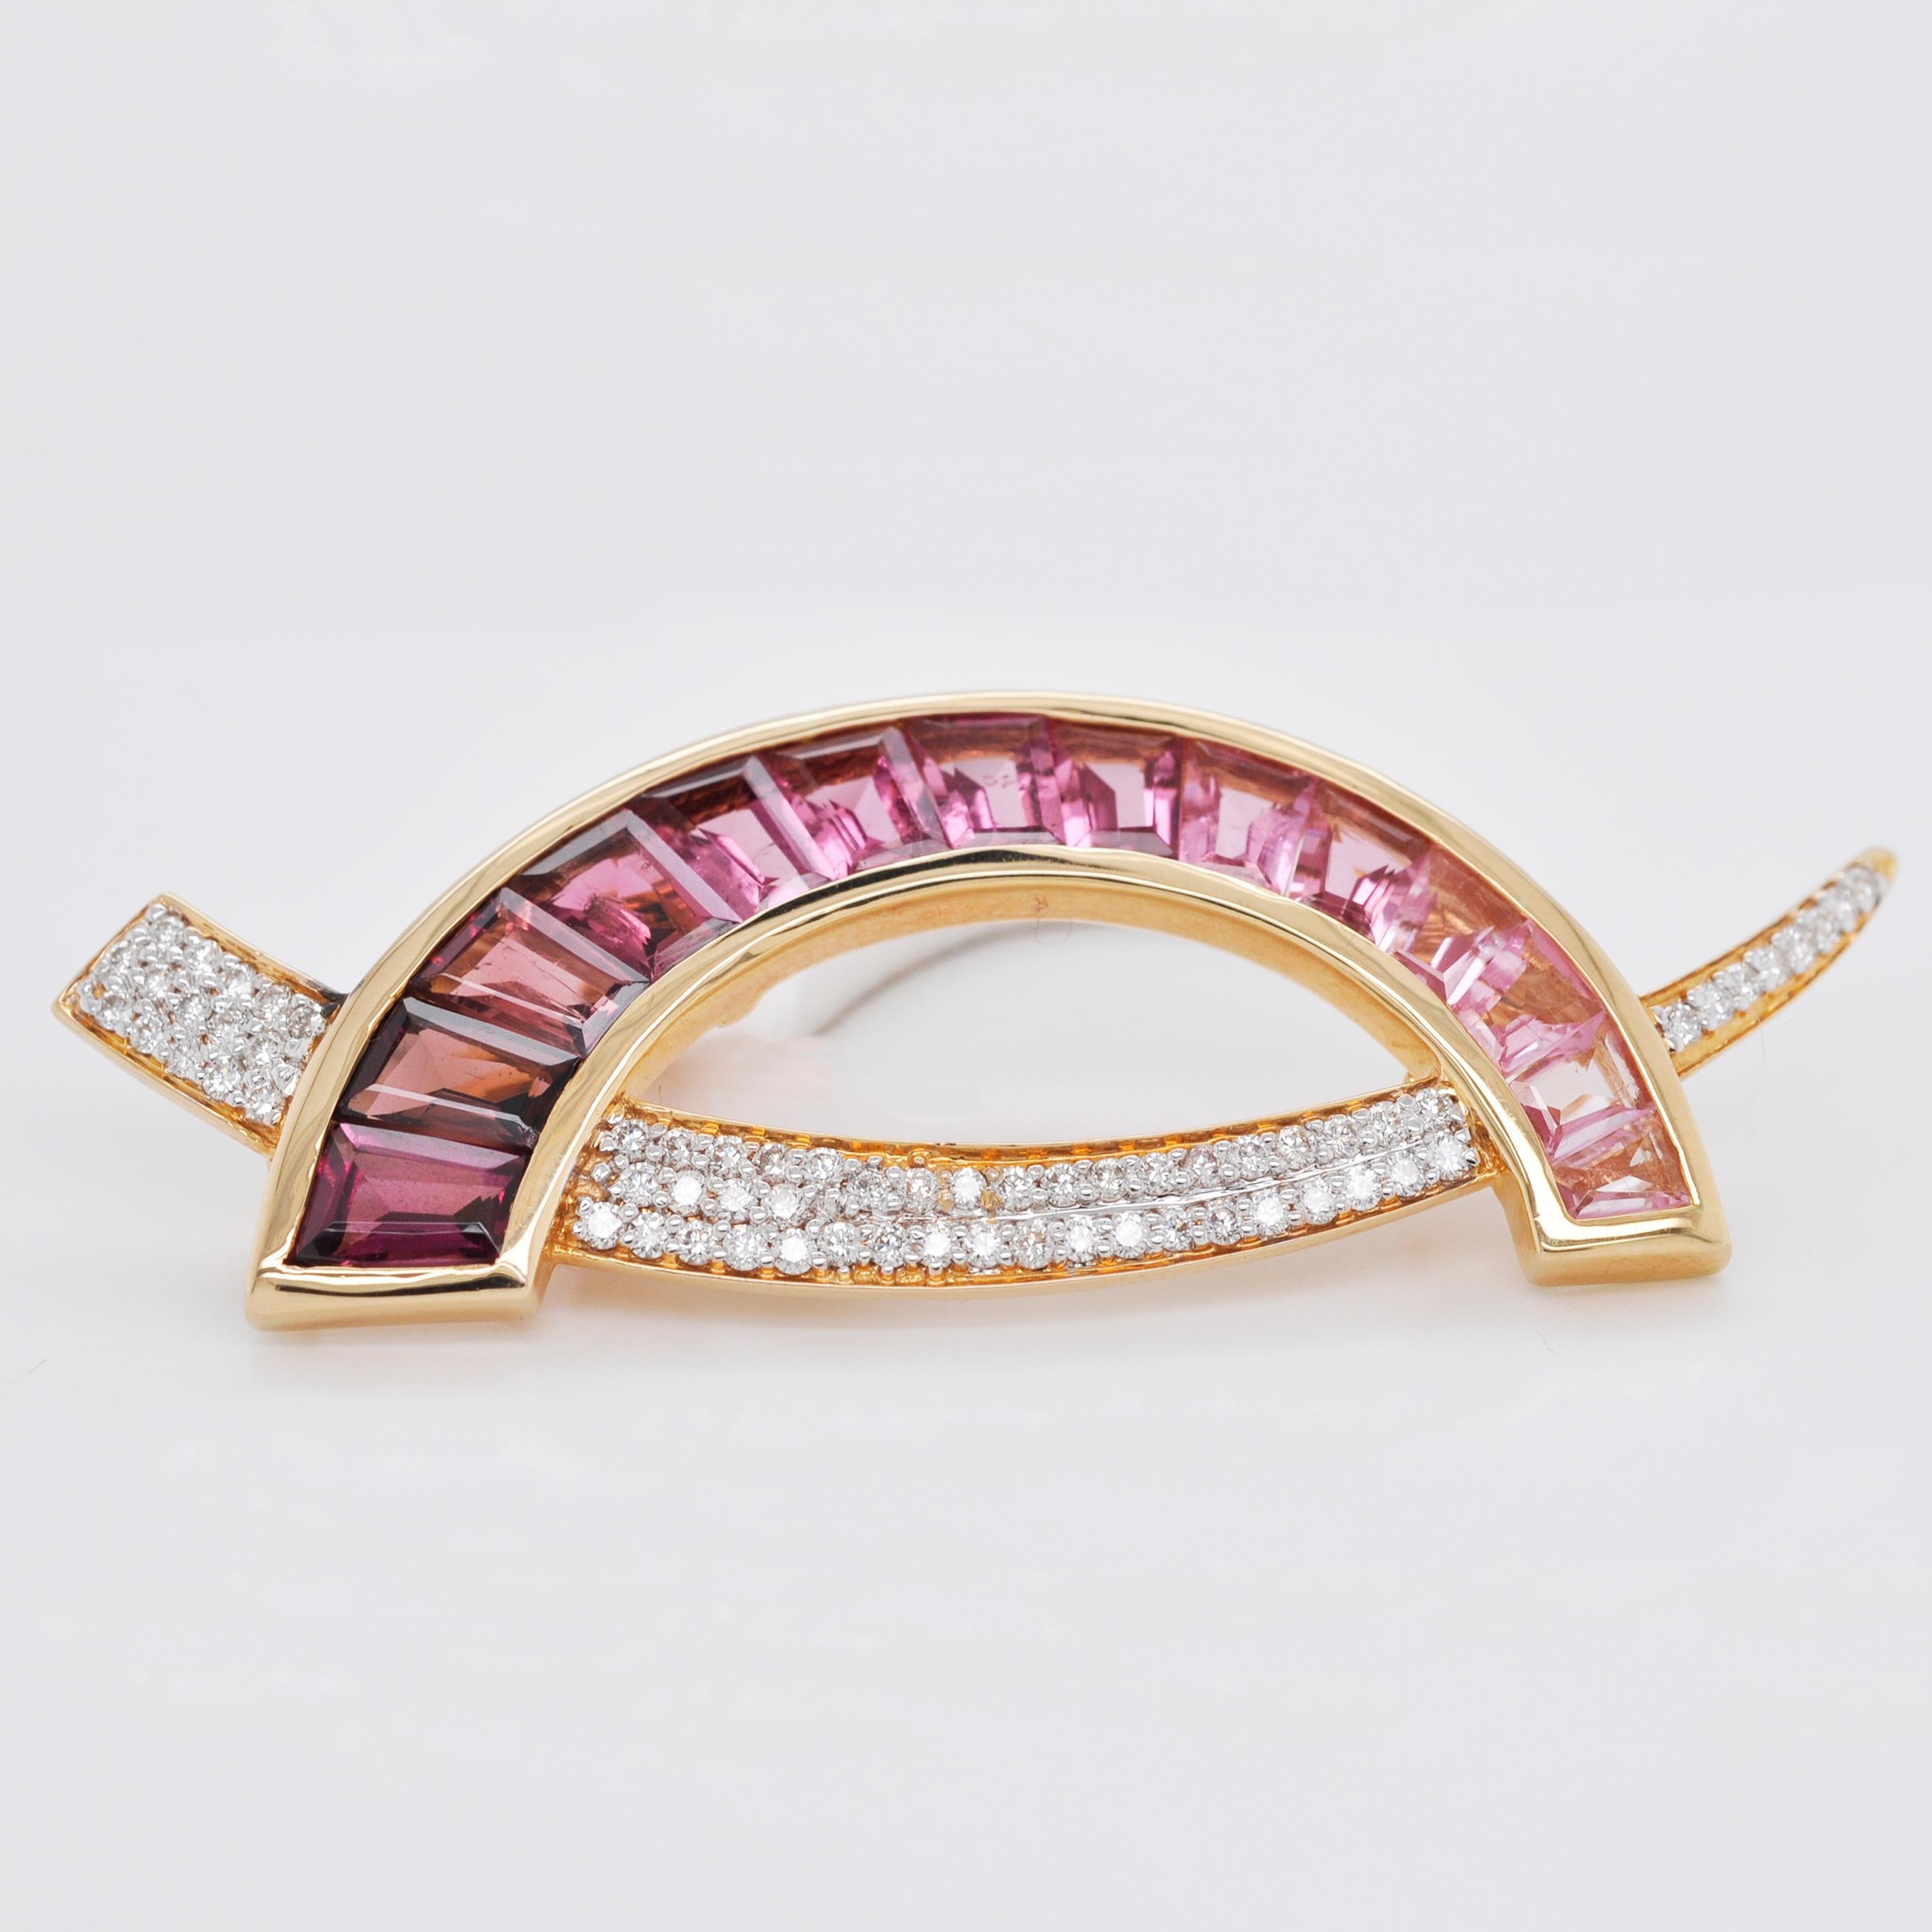 Baguette Cut 18 Karat Gold Caliber Cut Pink Tourmaline Taper Baguette Diamond Brooch Pendant 